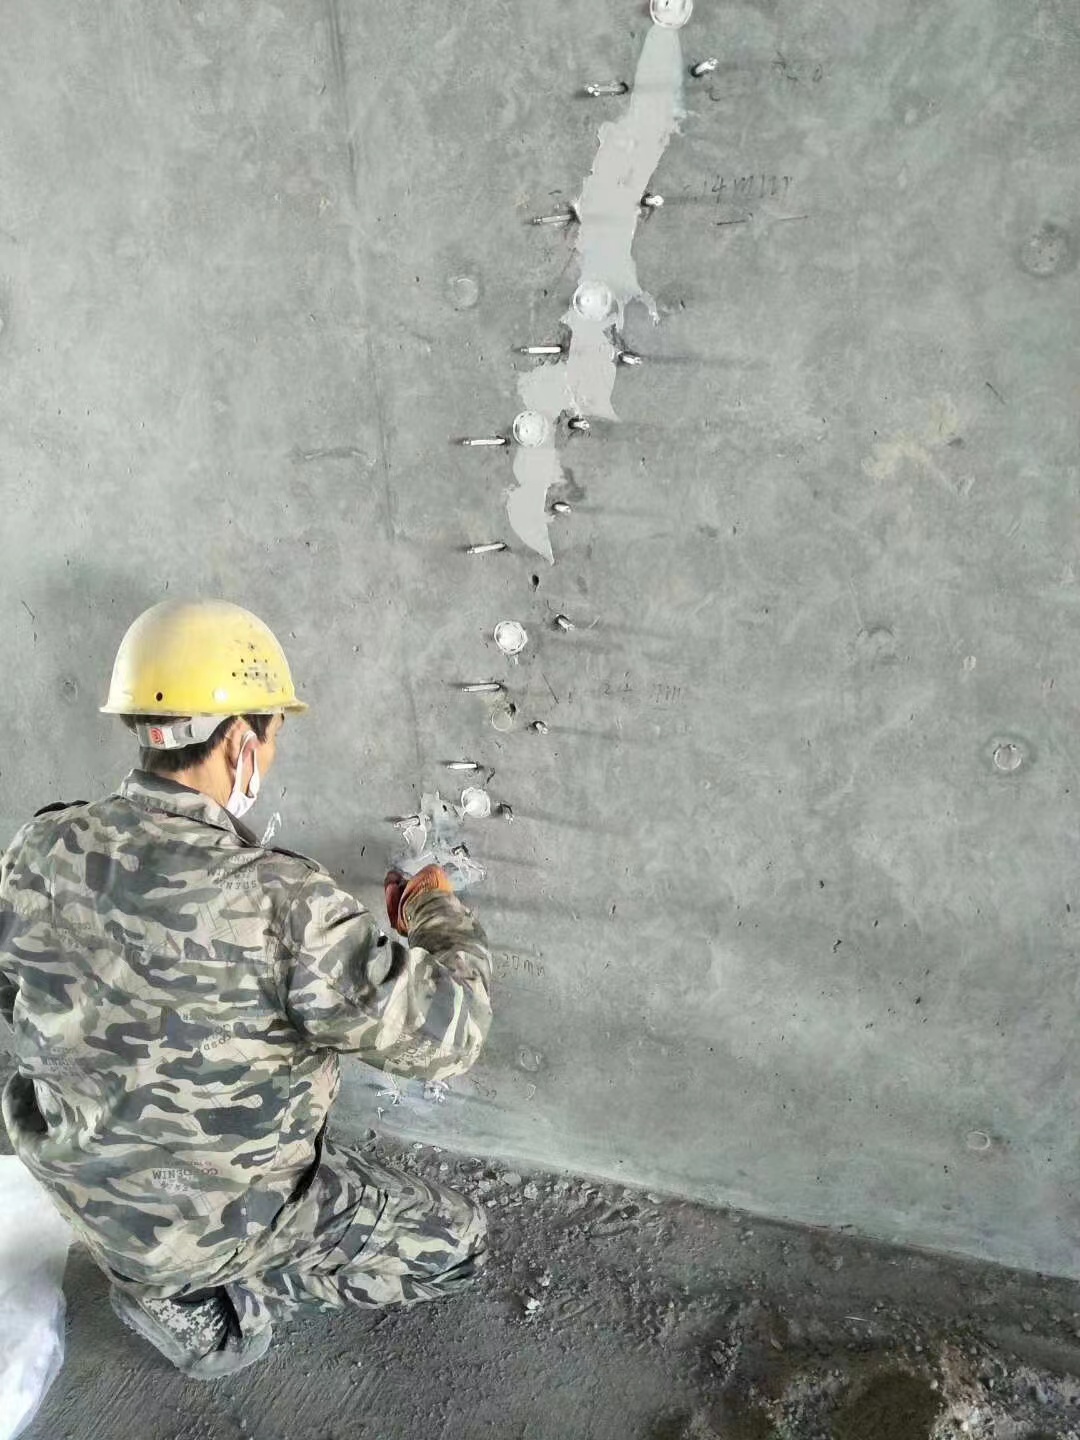 平鲁混凝土楼板裂缝加固施工的方案